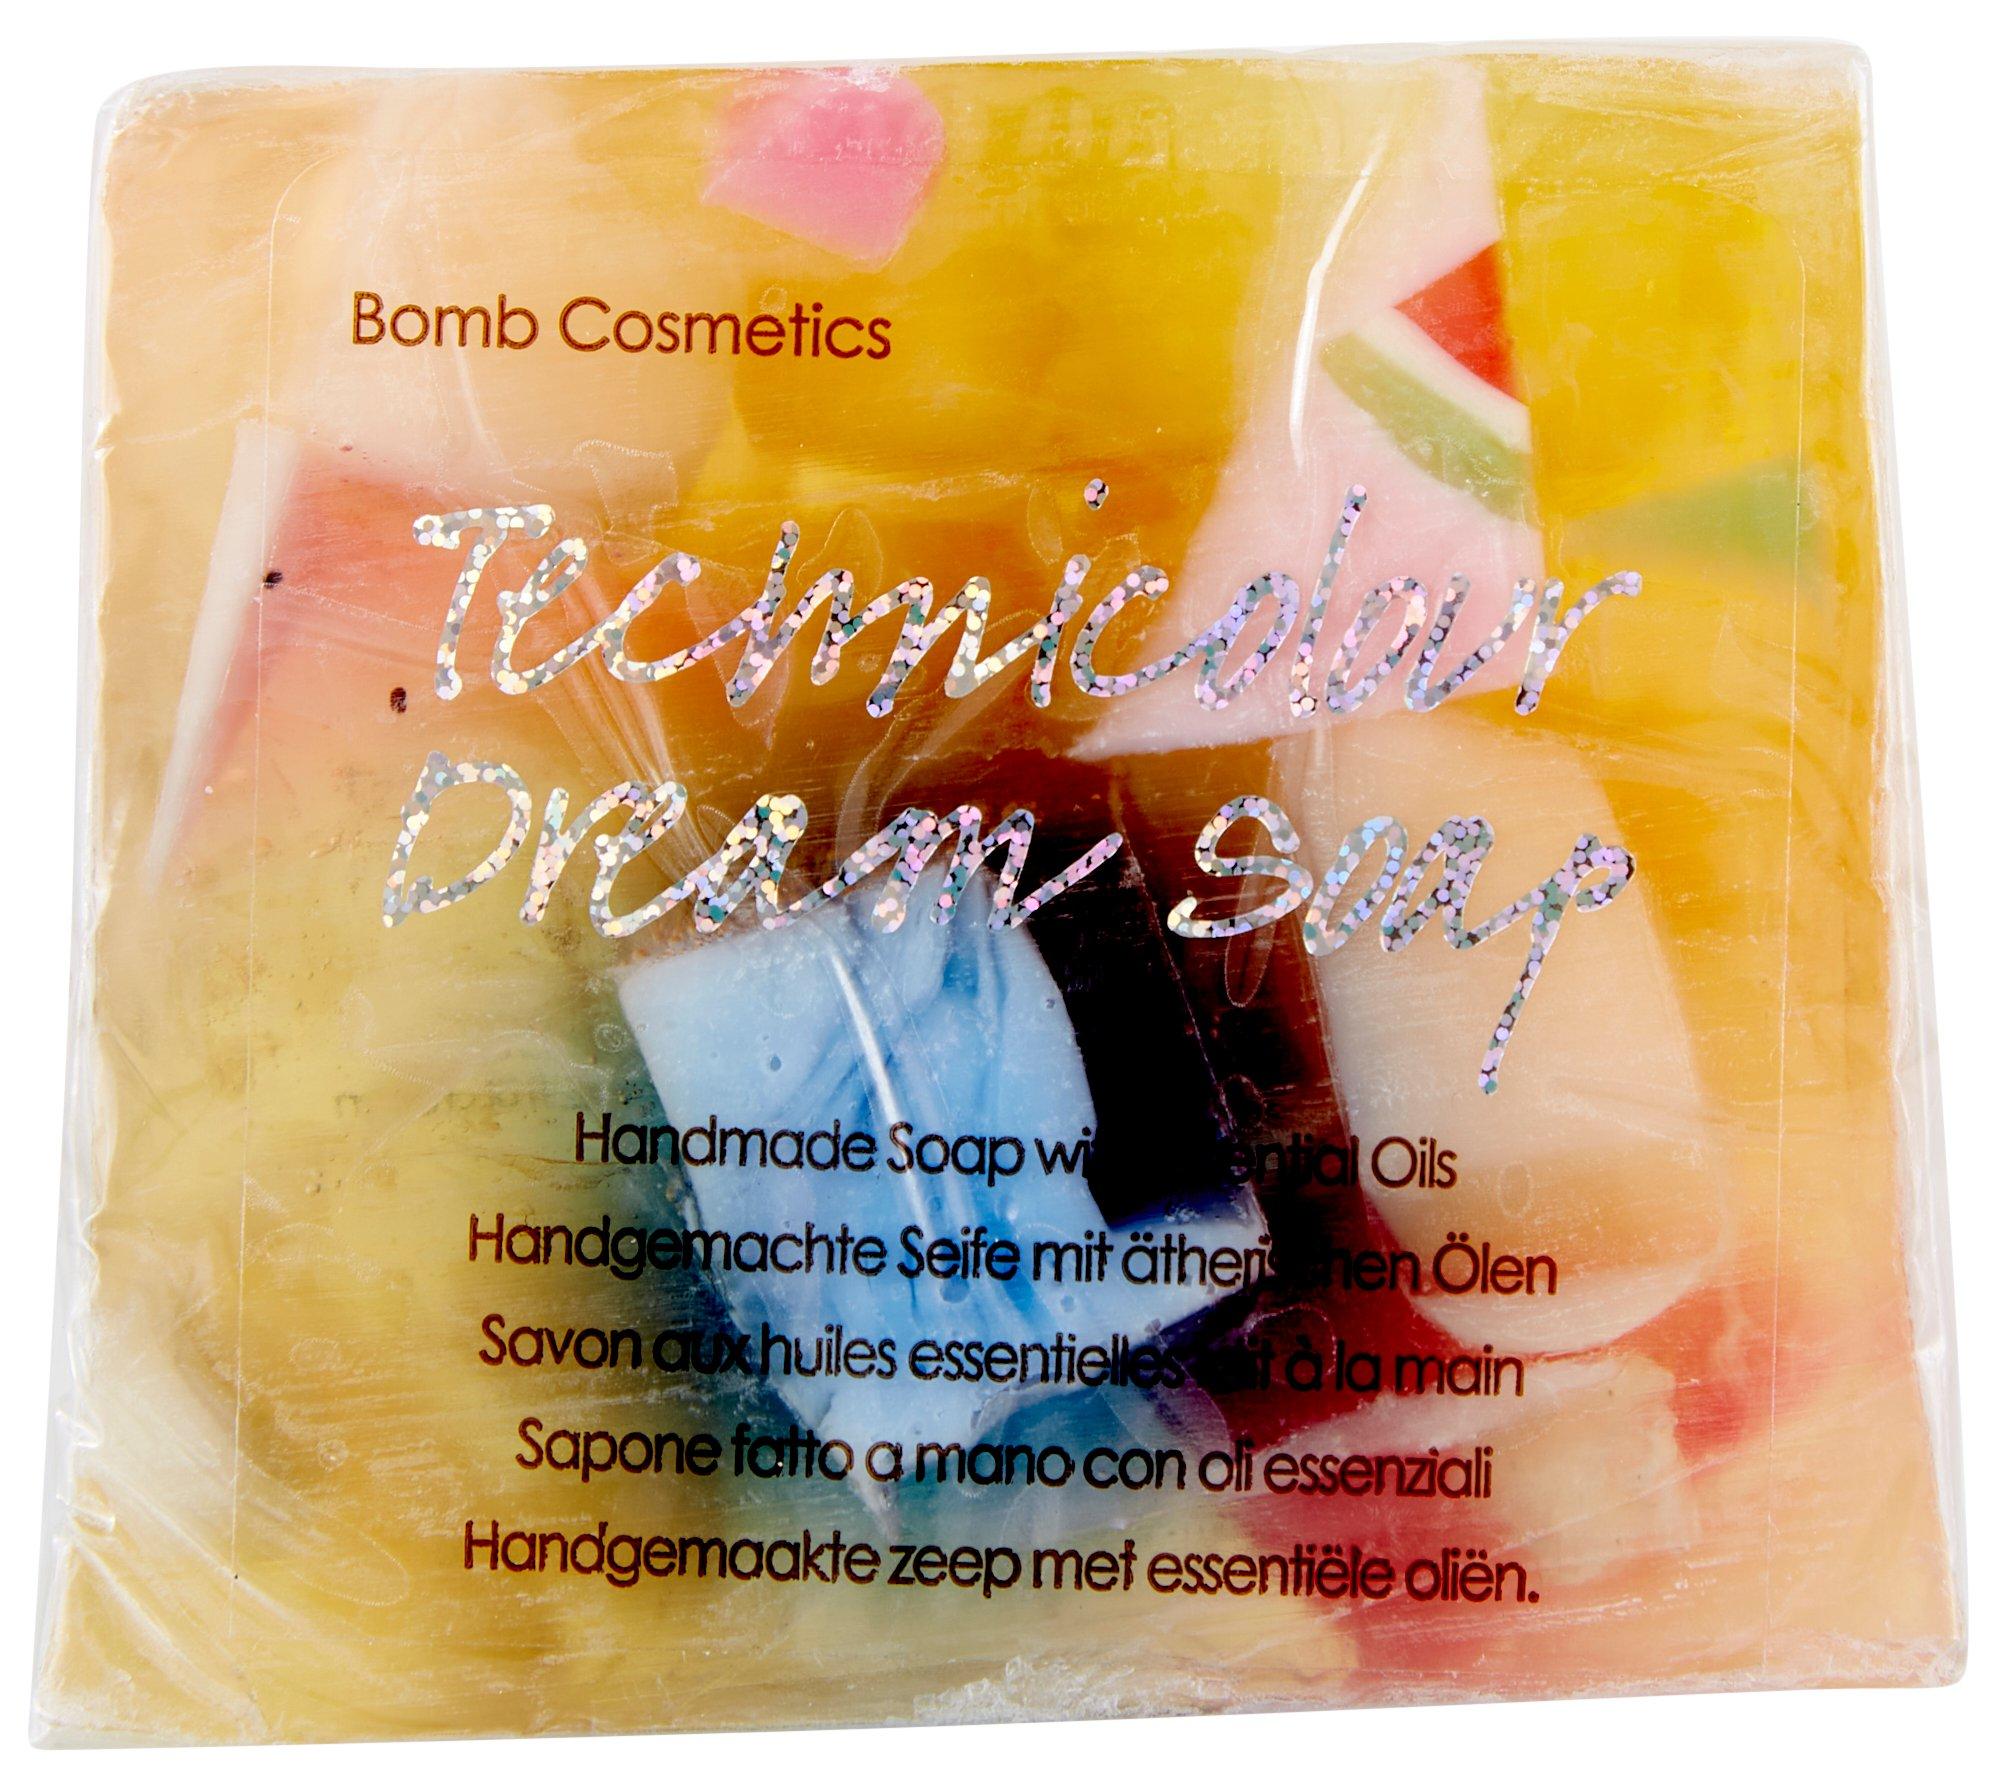 Bomb Cosmetics Technicolor Dream Handmade Soap 3.5 oz.